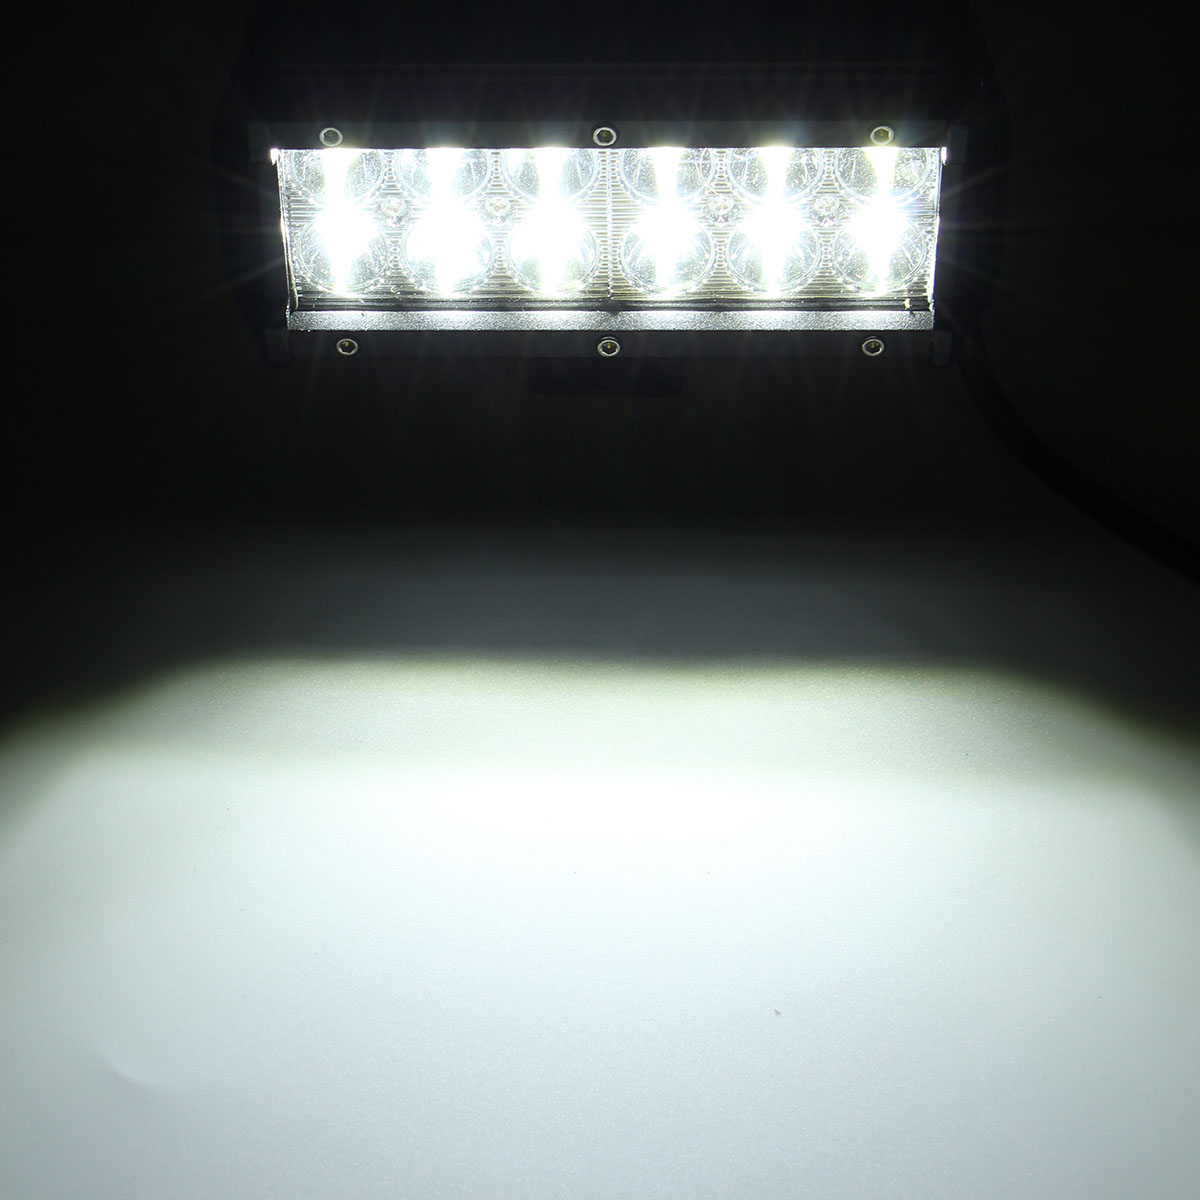 6.5Inch LED Work Light Bar Spot Beam 10-30V 36W White for off Road Ute ATV UTE SUV